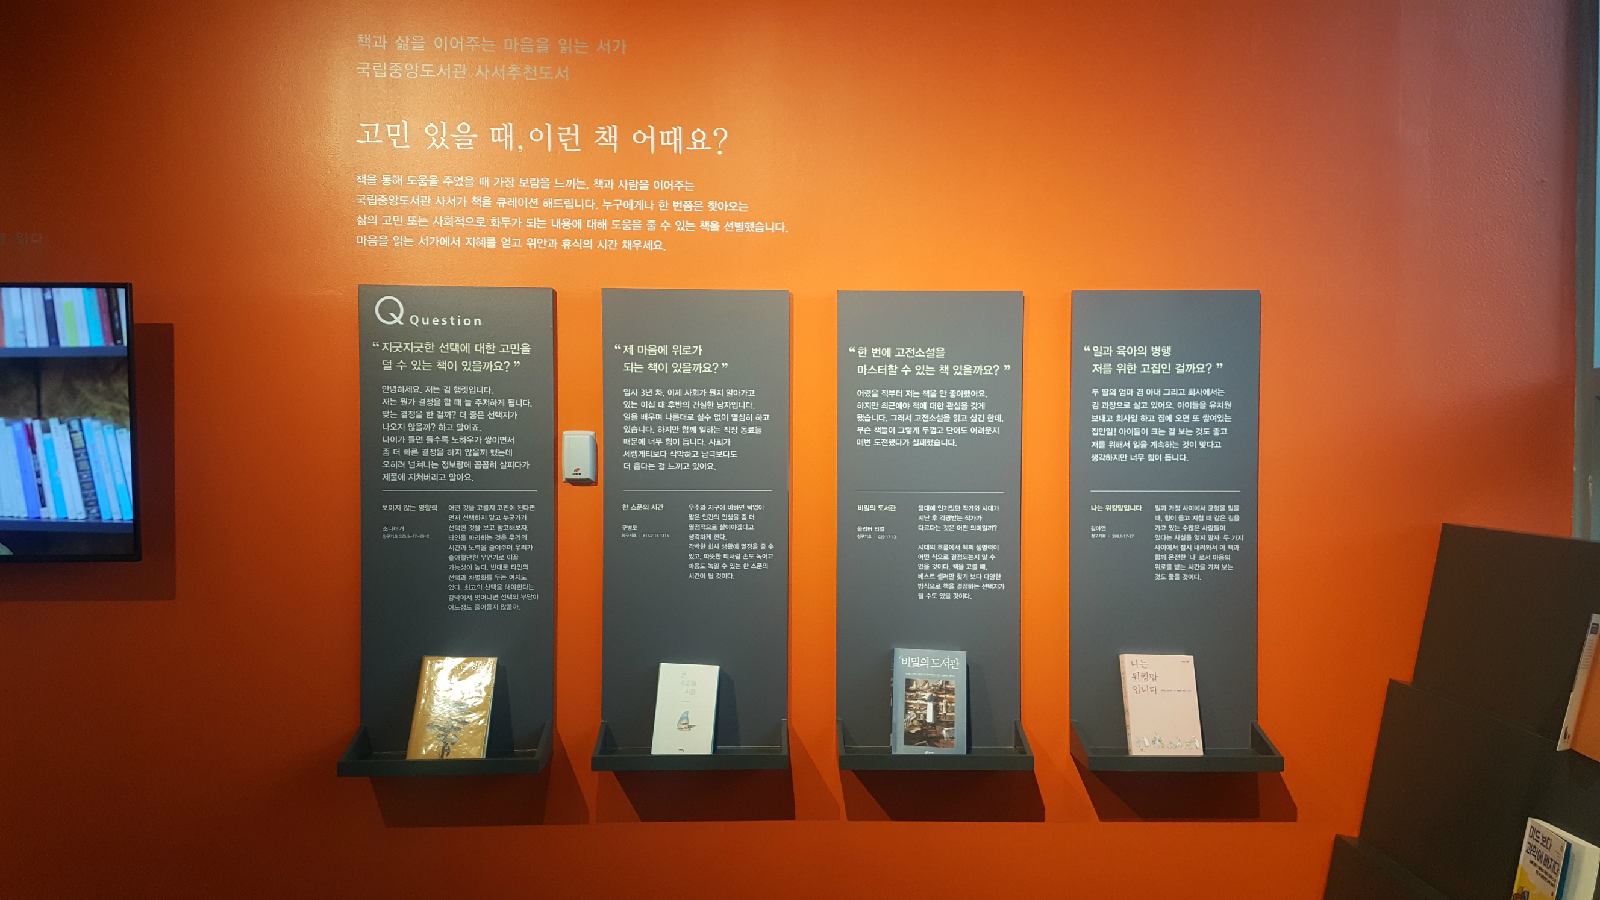 ‘국립중앙도서관 북큐레이션’ 공간